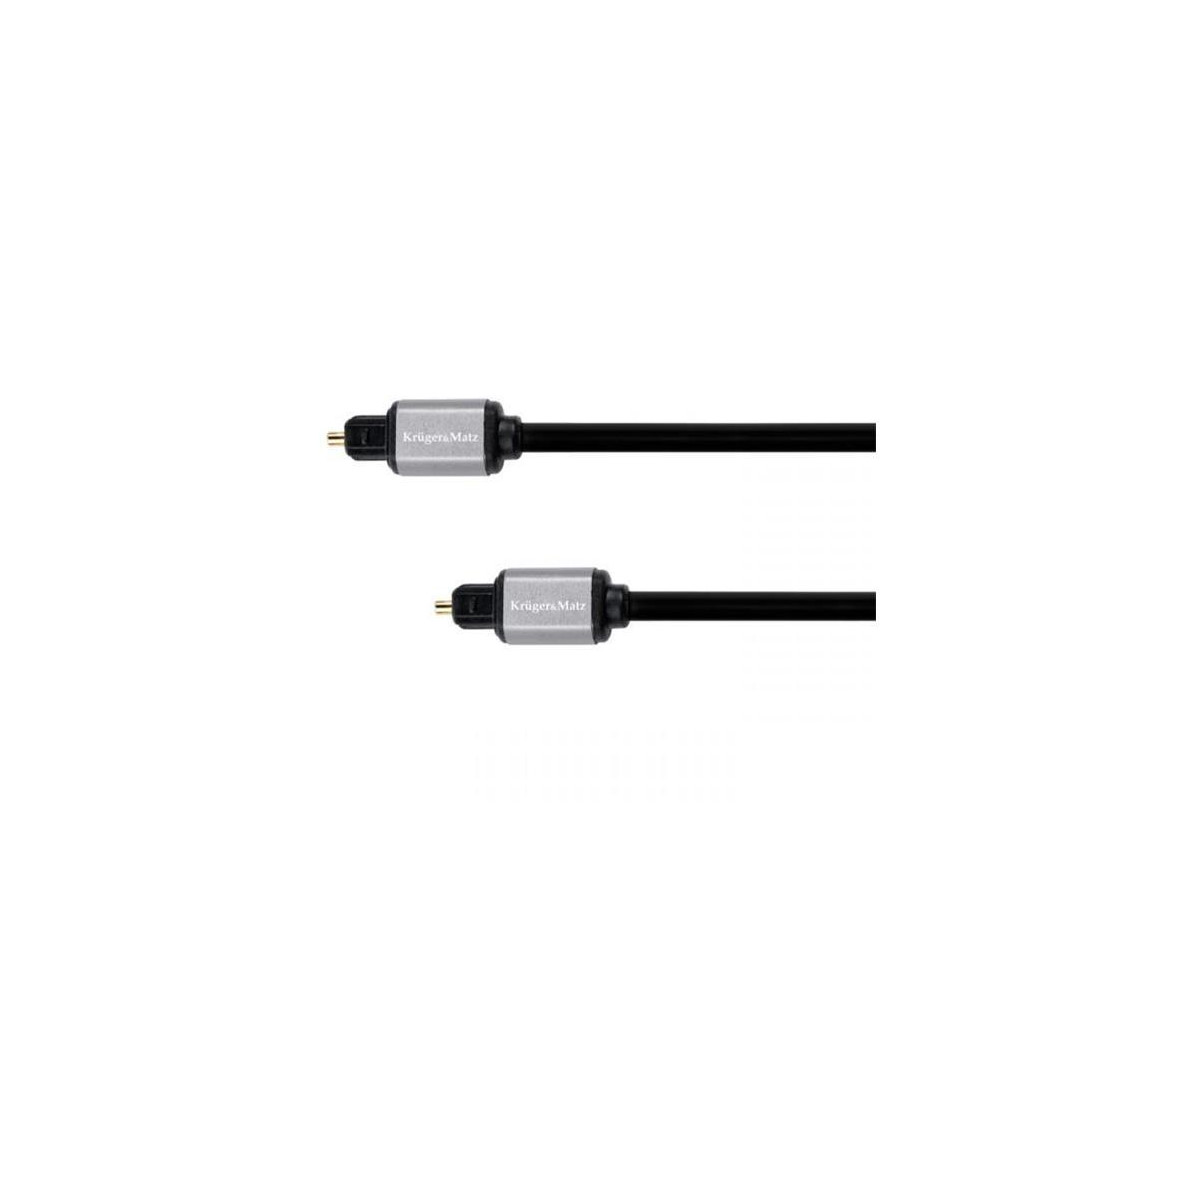 Kabel optický TOSLINK KRUGER & MATZ 2m